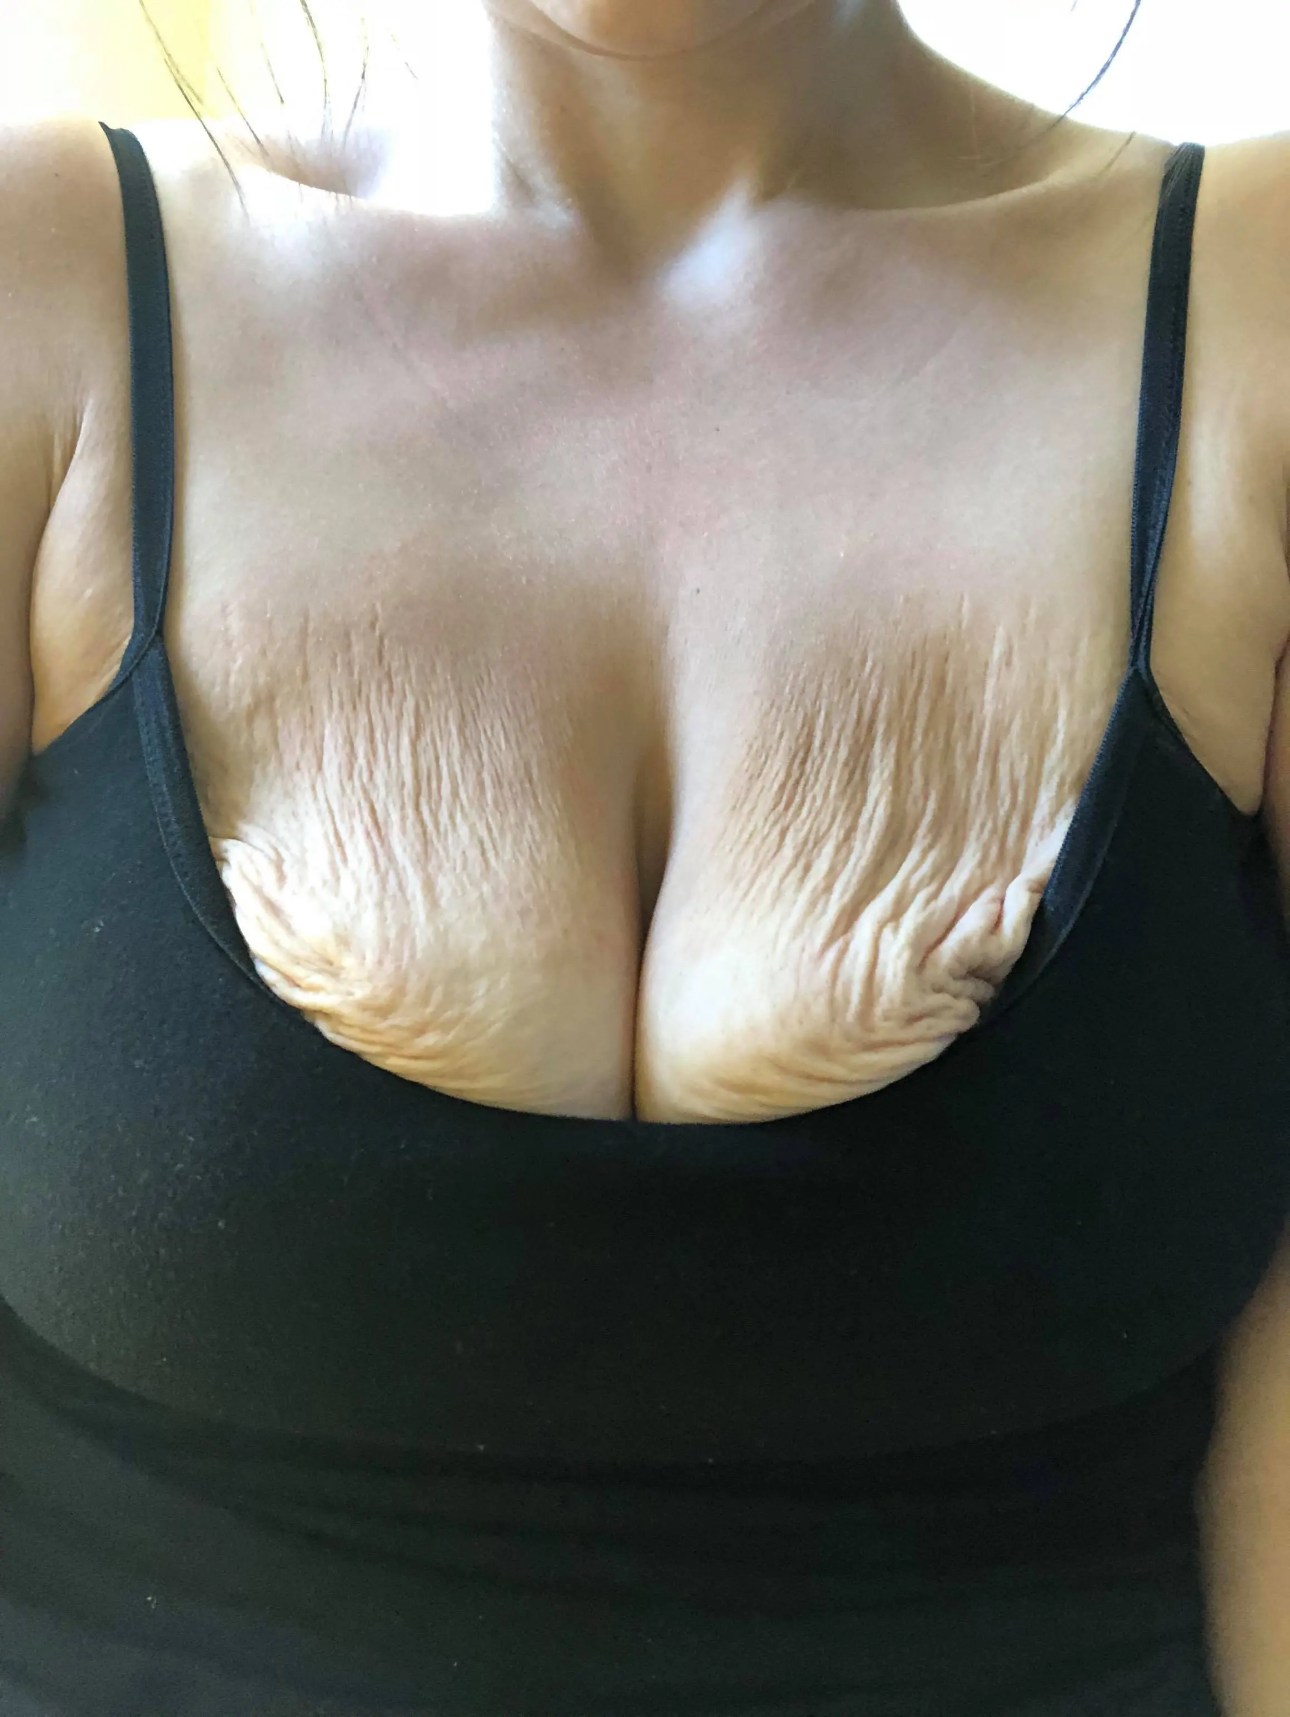 aaron powrie share empty saggy tits photos